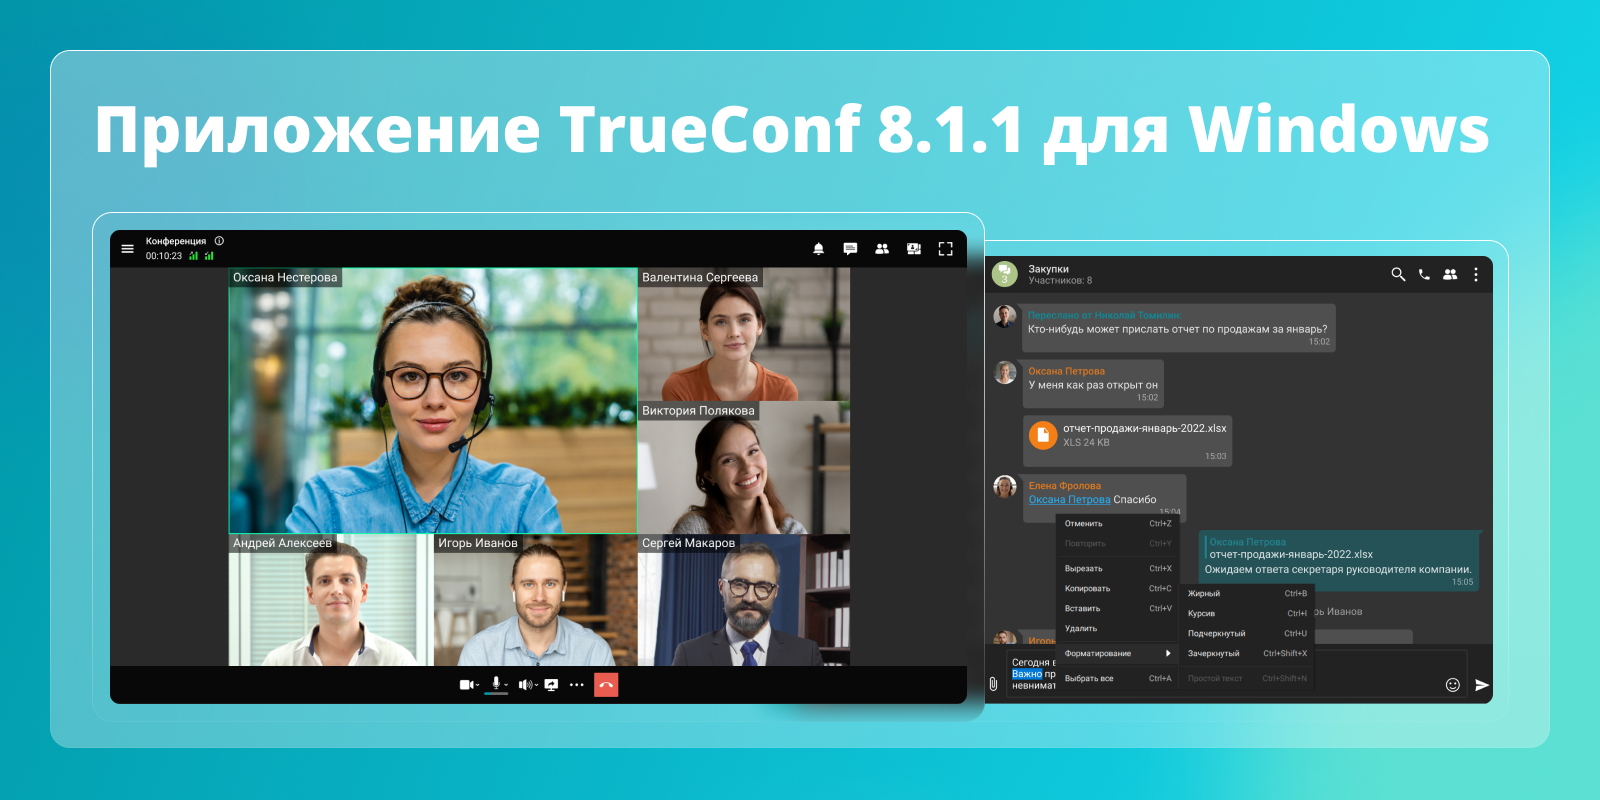 Обновление TrueConf 8.1.1 для Windows 2